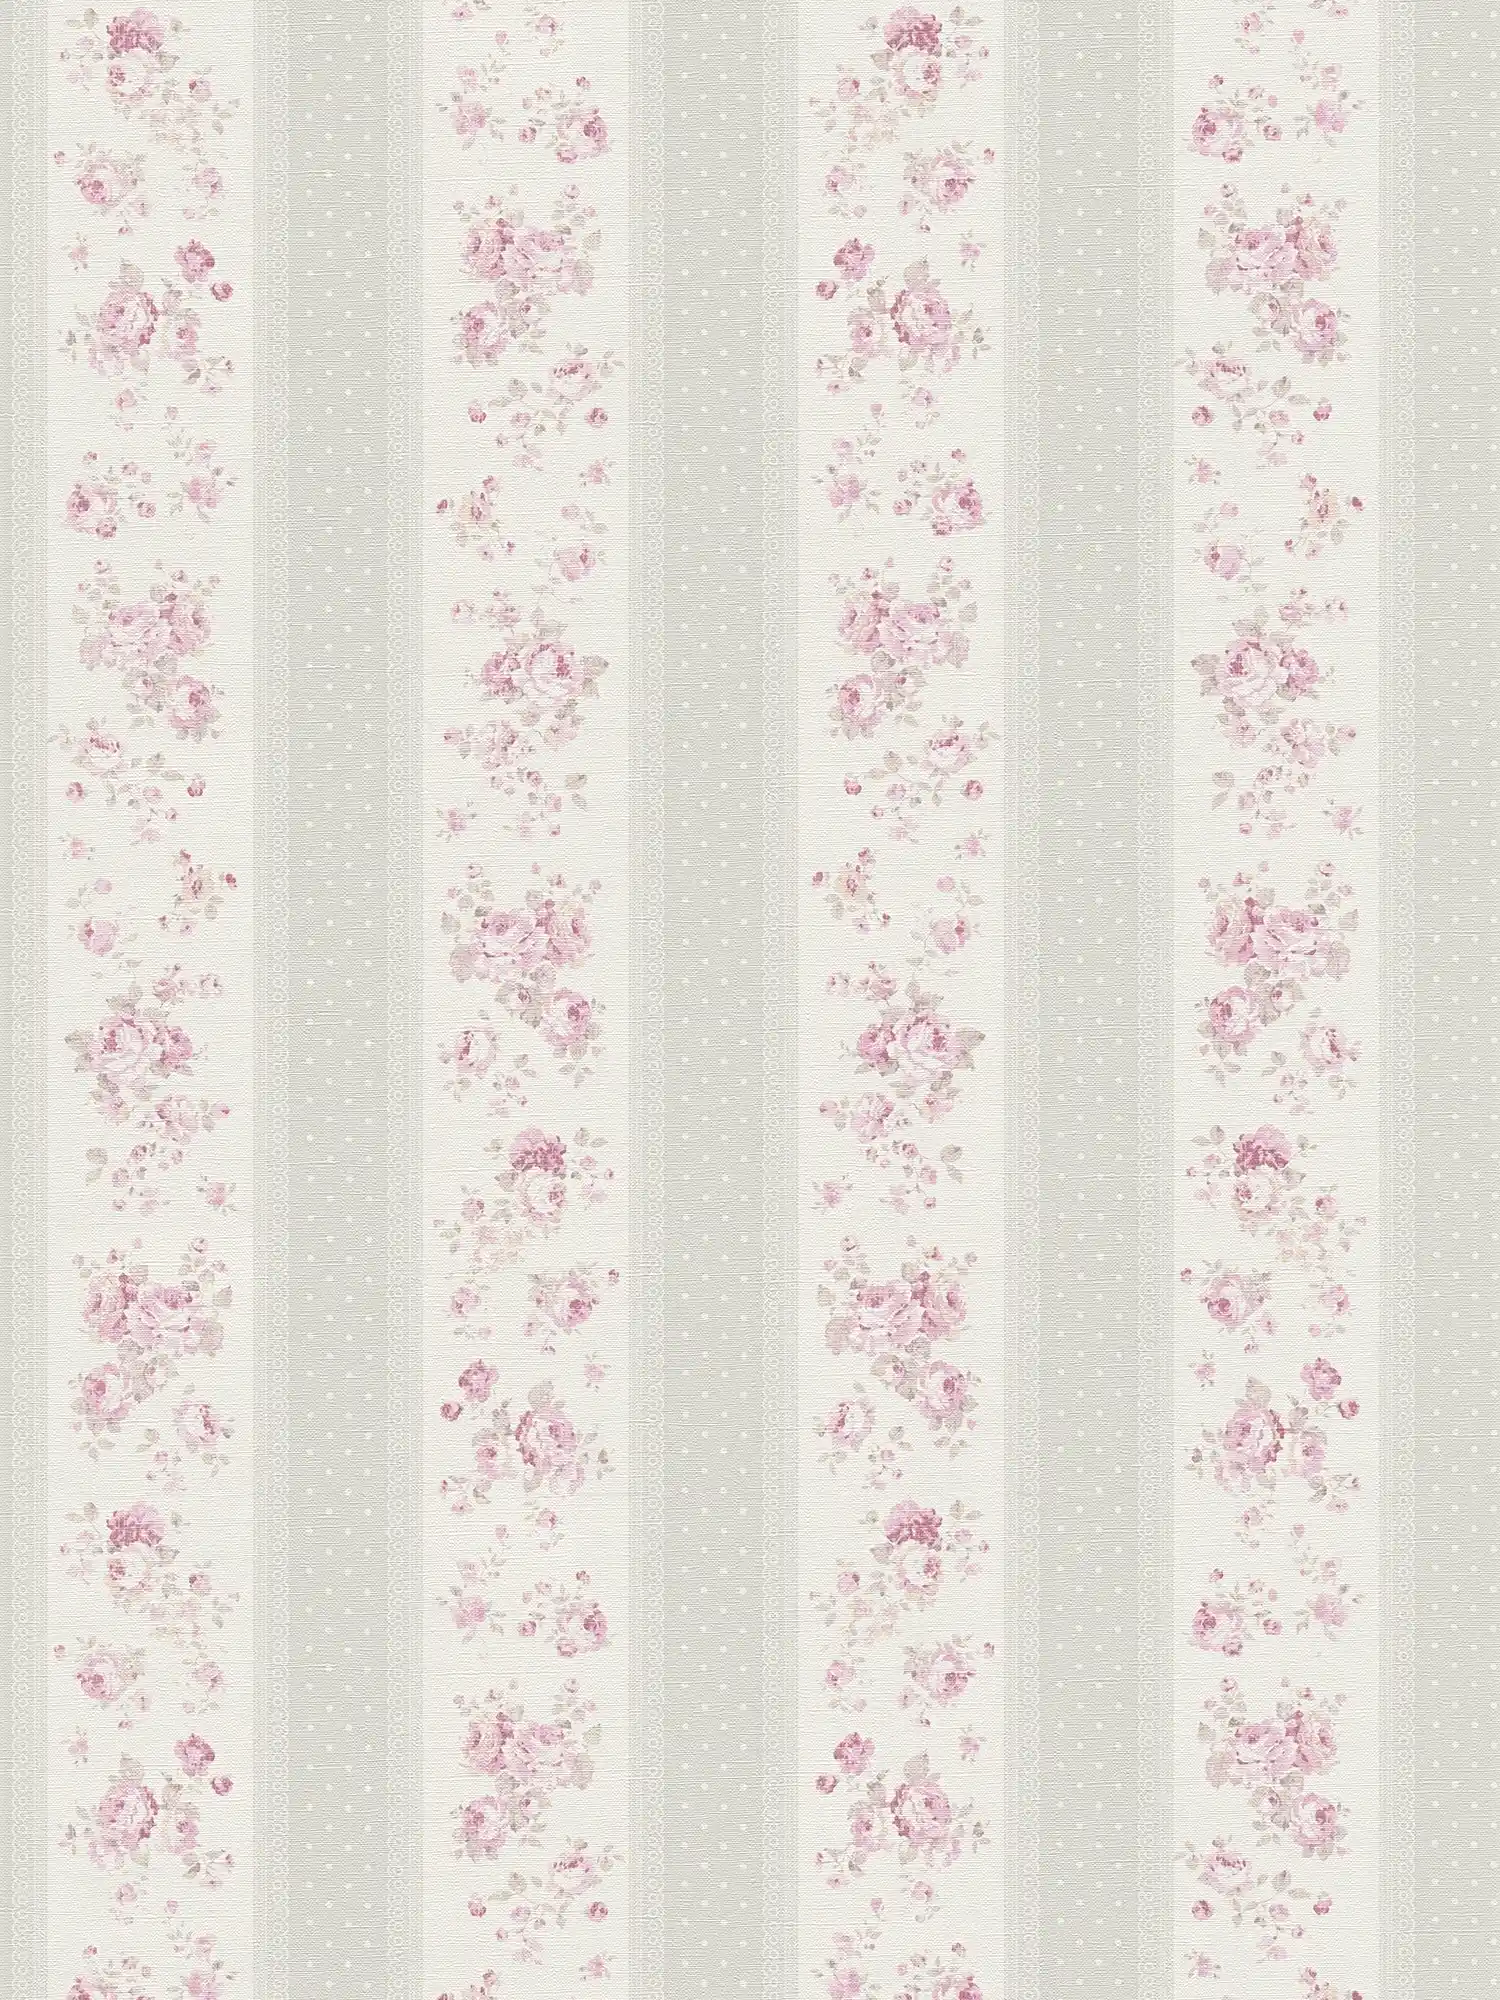         Streifentapete mit Blumen und Punkt Muster – Grau, Weiß, Rosa
    